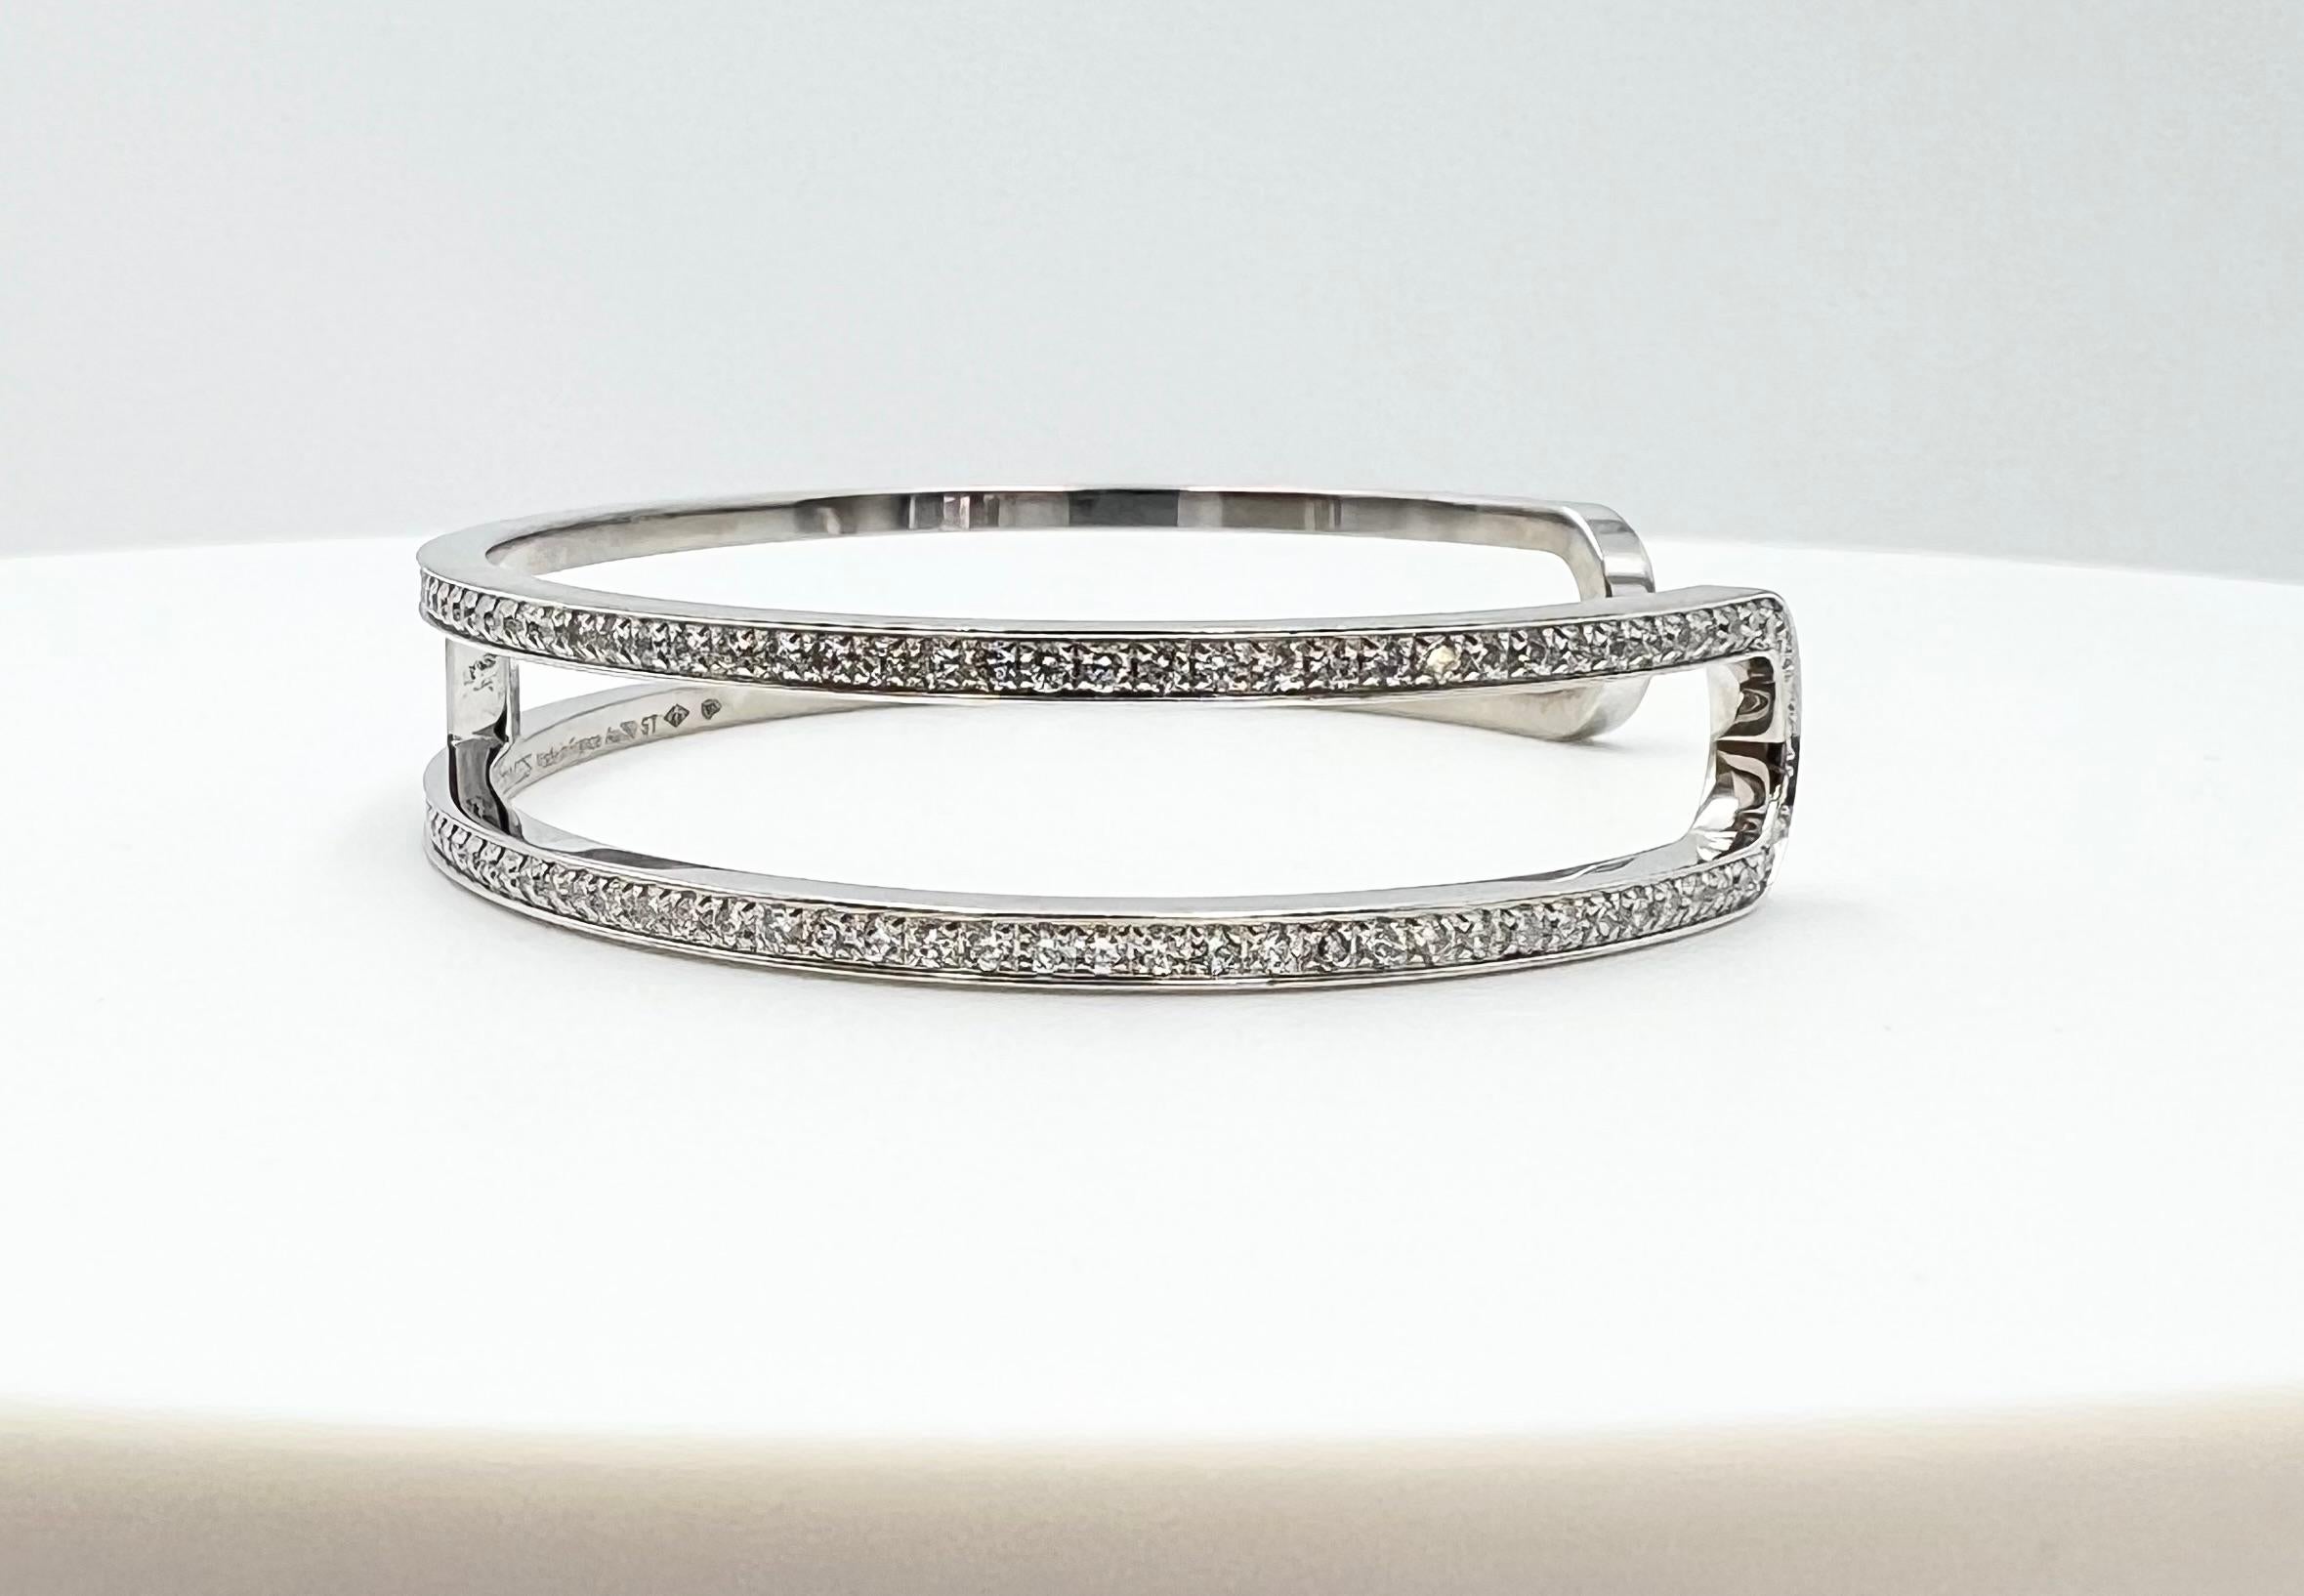 hermes diamond bracelet